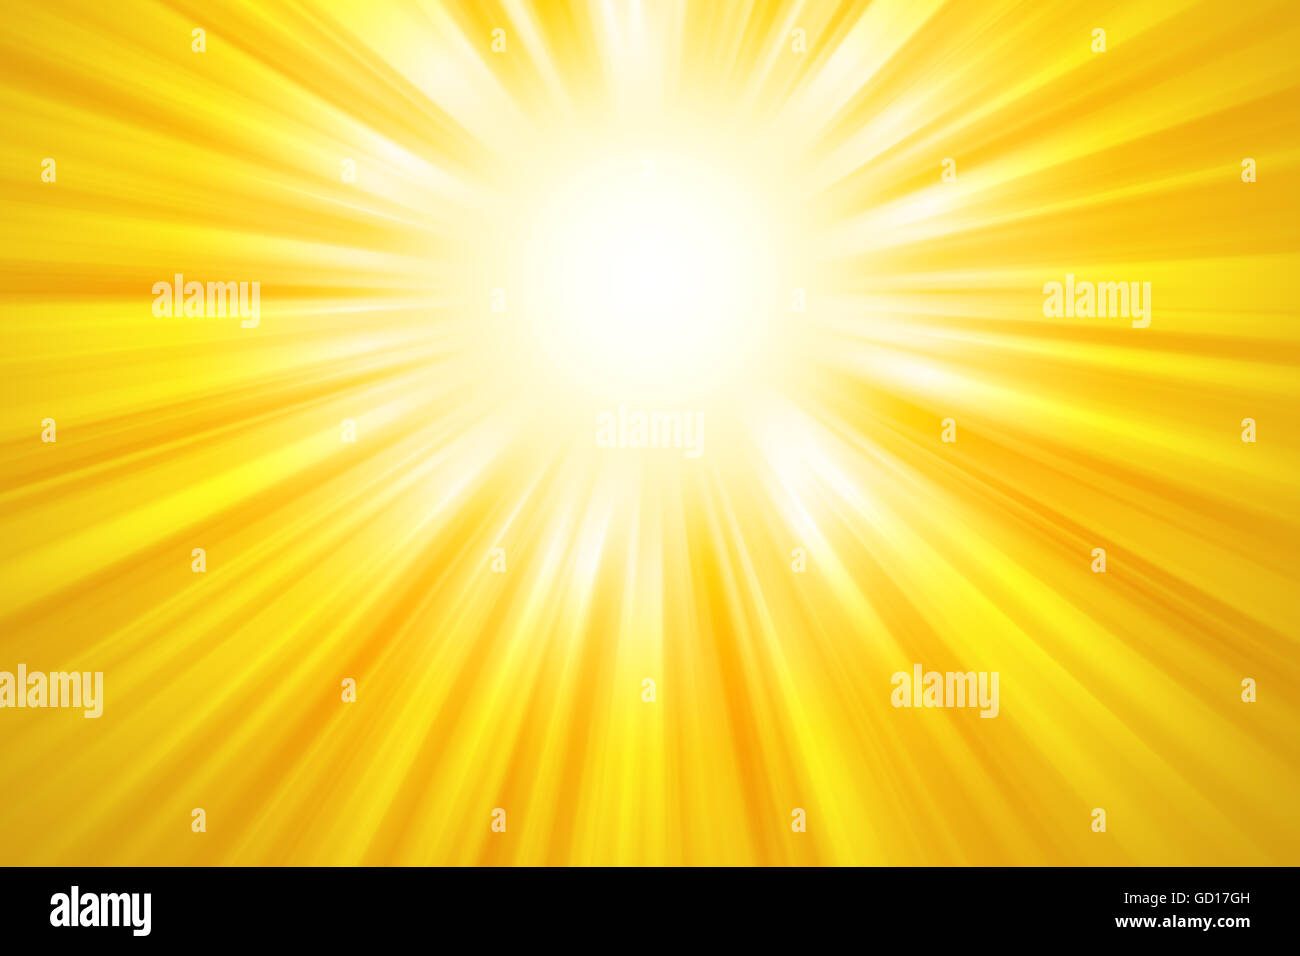 Goldene Sonnenstrahlen Hintergrund. Leuchtend gelbe Lichtstrahlen, die aus der oberen Mitte des Bildes. Abbildung. Stockfoto